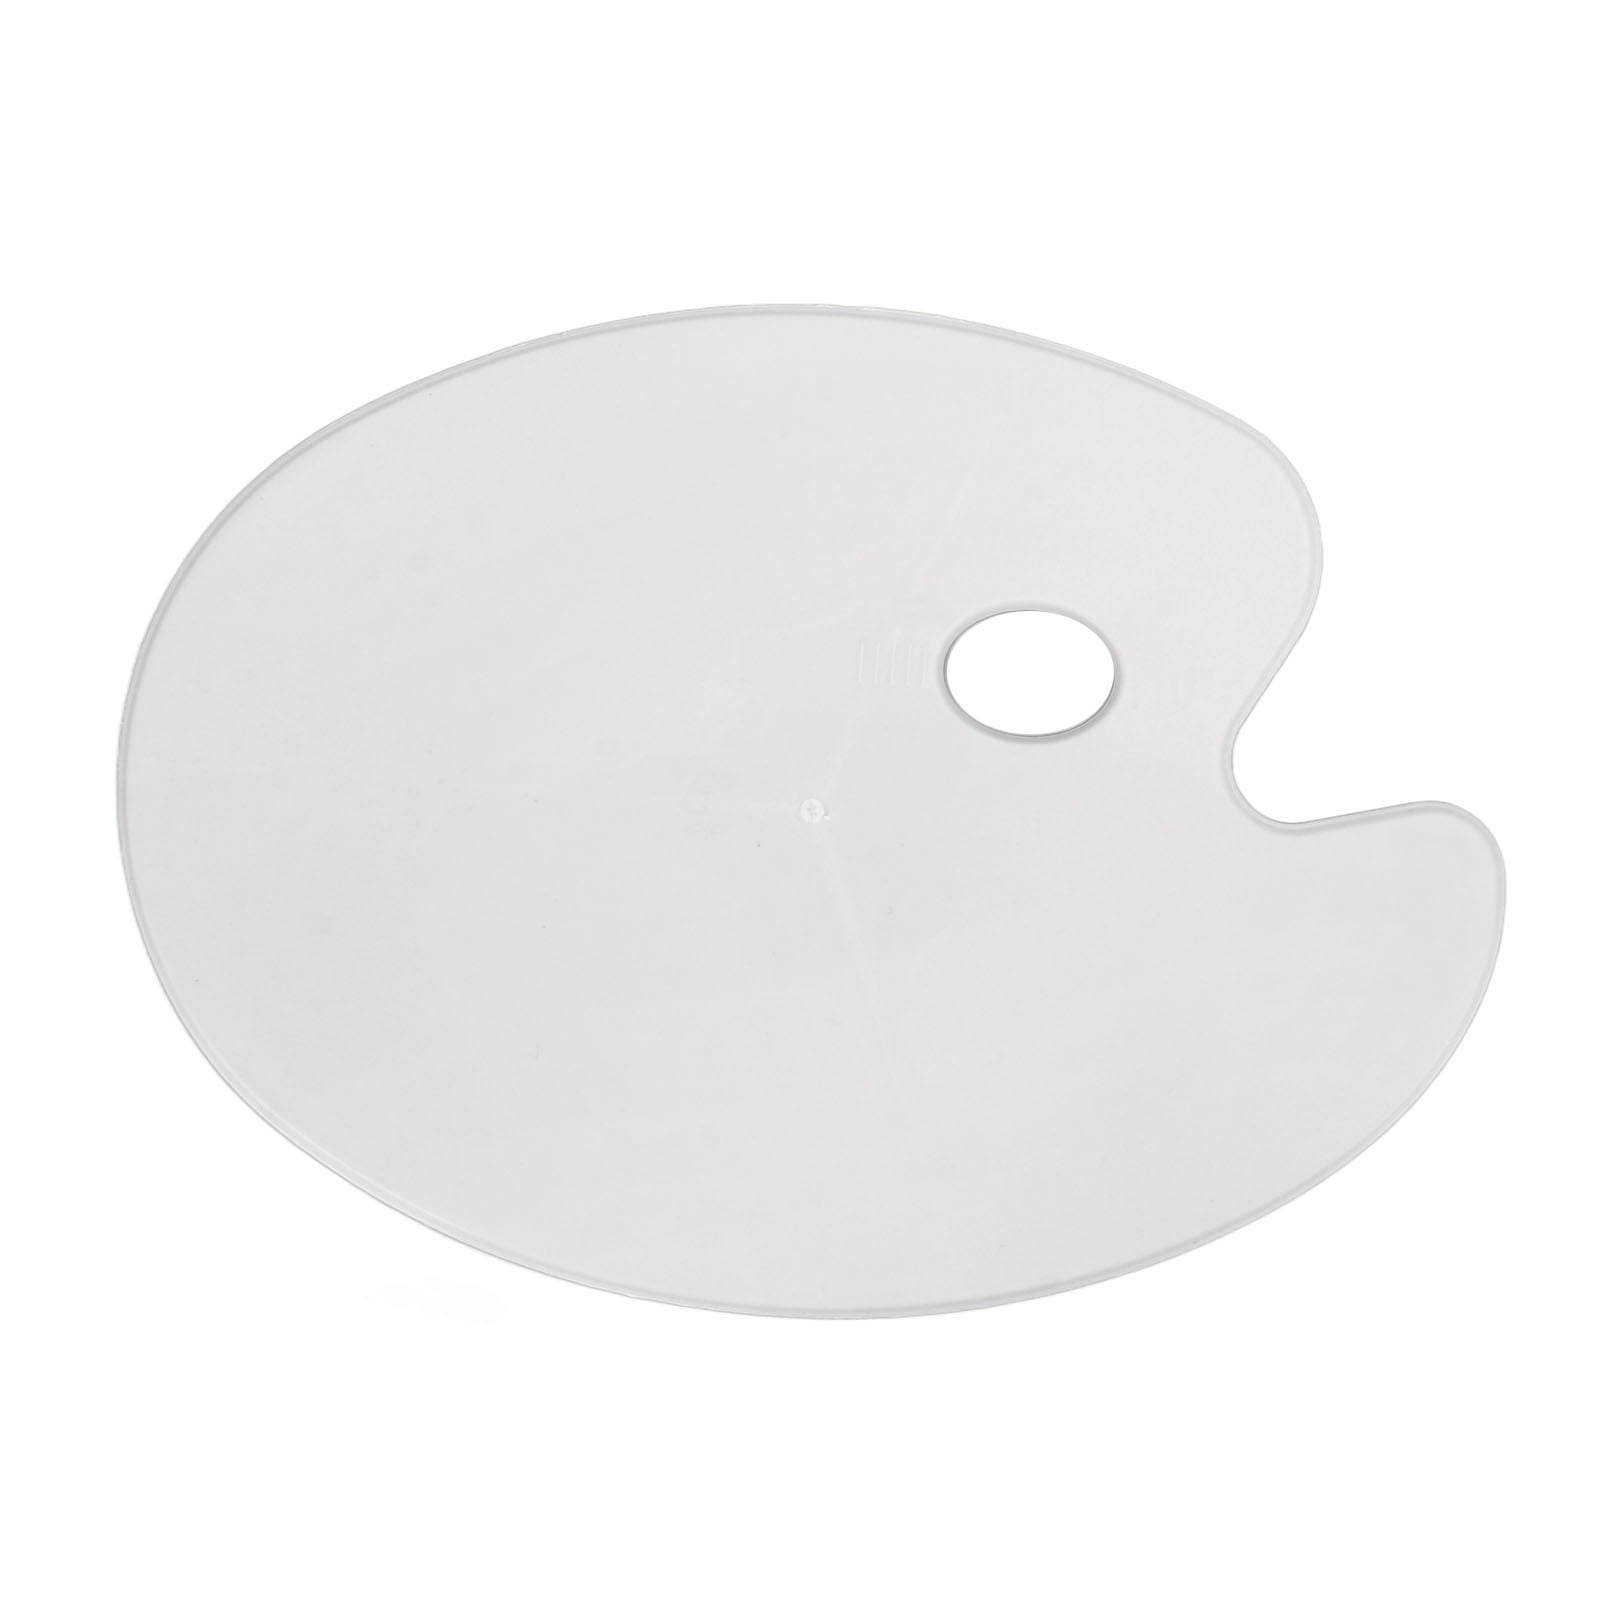 iGadgitz Home U7092 Palette Paper Tear Off Palette Pad Disposable Paint  Palette (50 sheet) - White